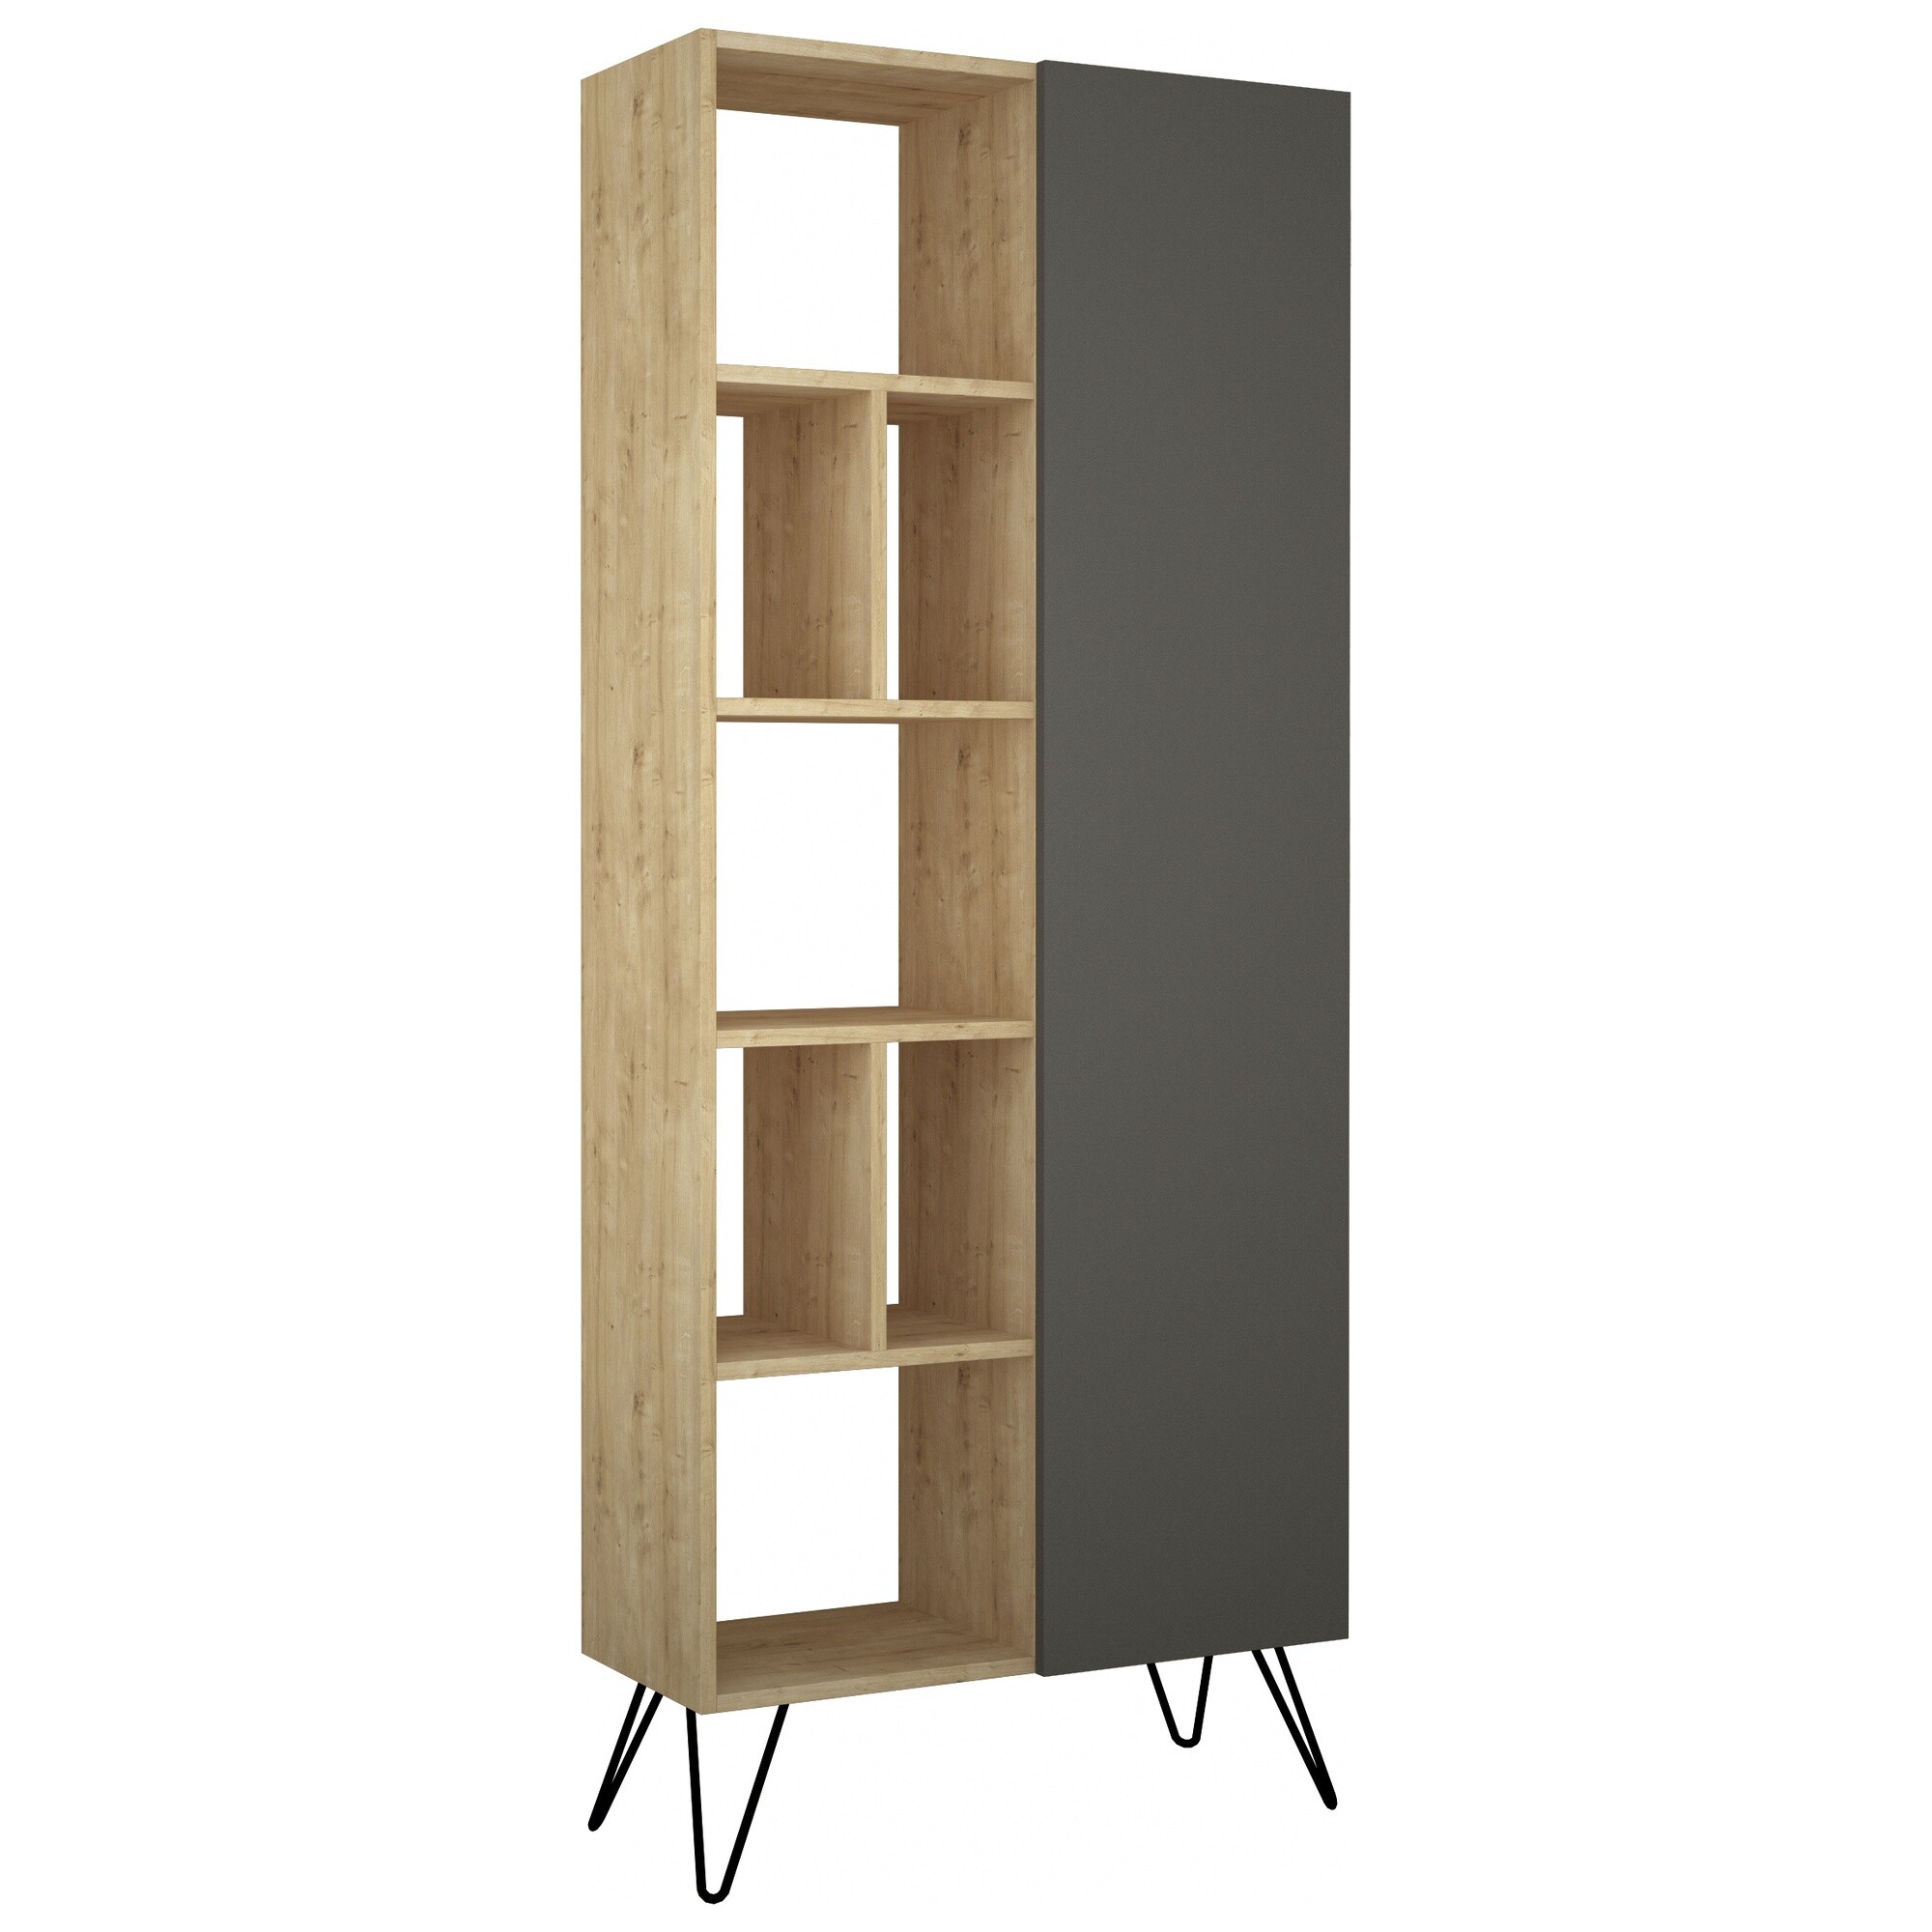 Стеллаж деревянный прямой серый, бежевый Jedda Bookcase Oak LEV00668